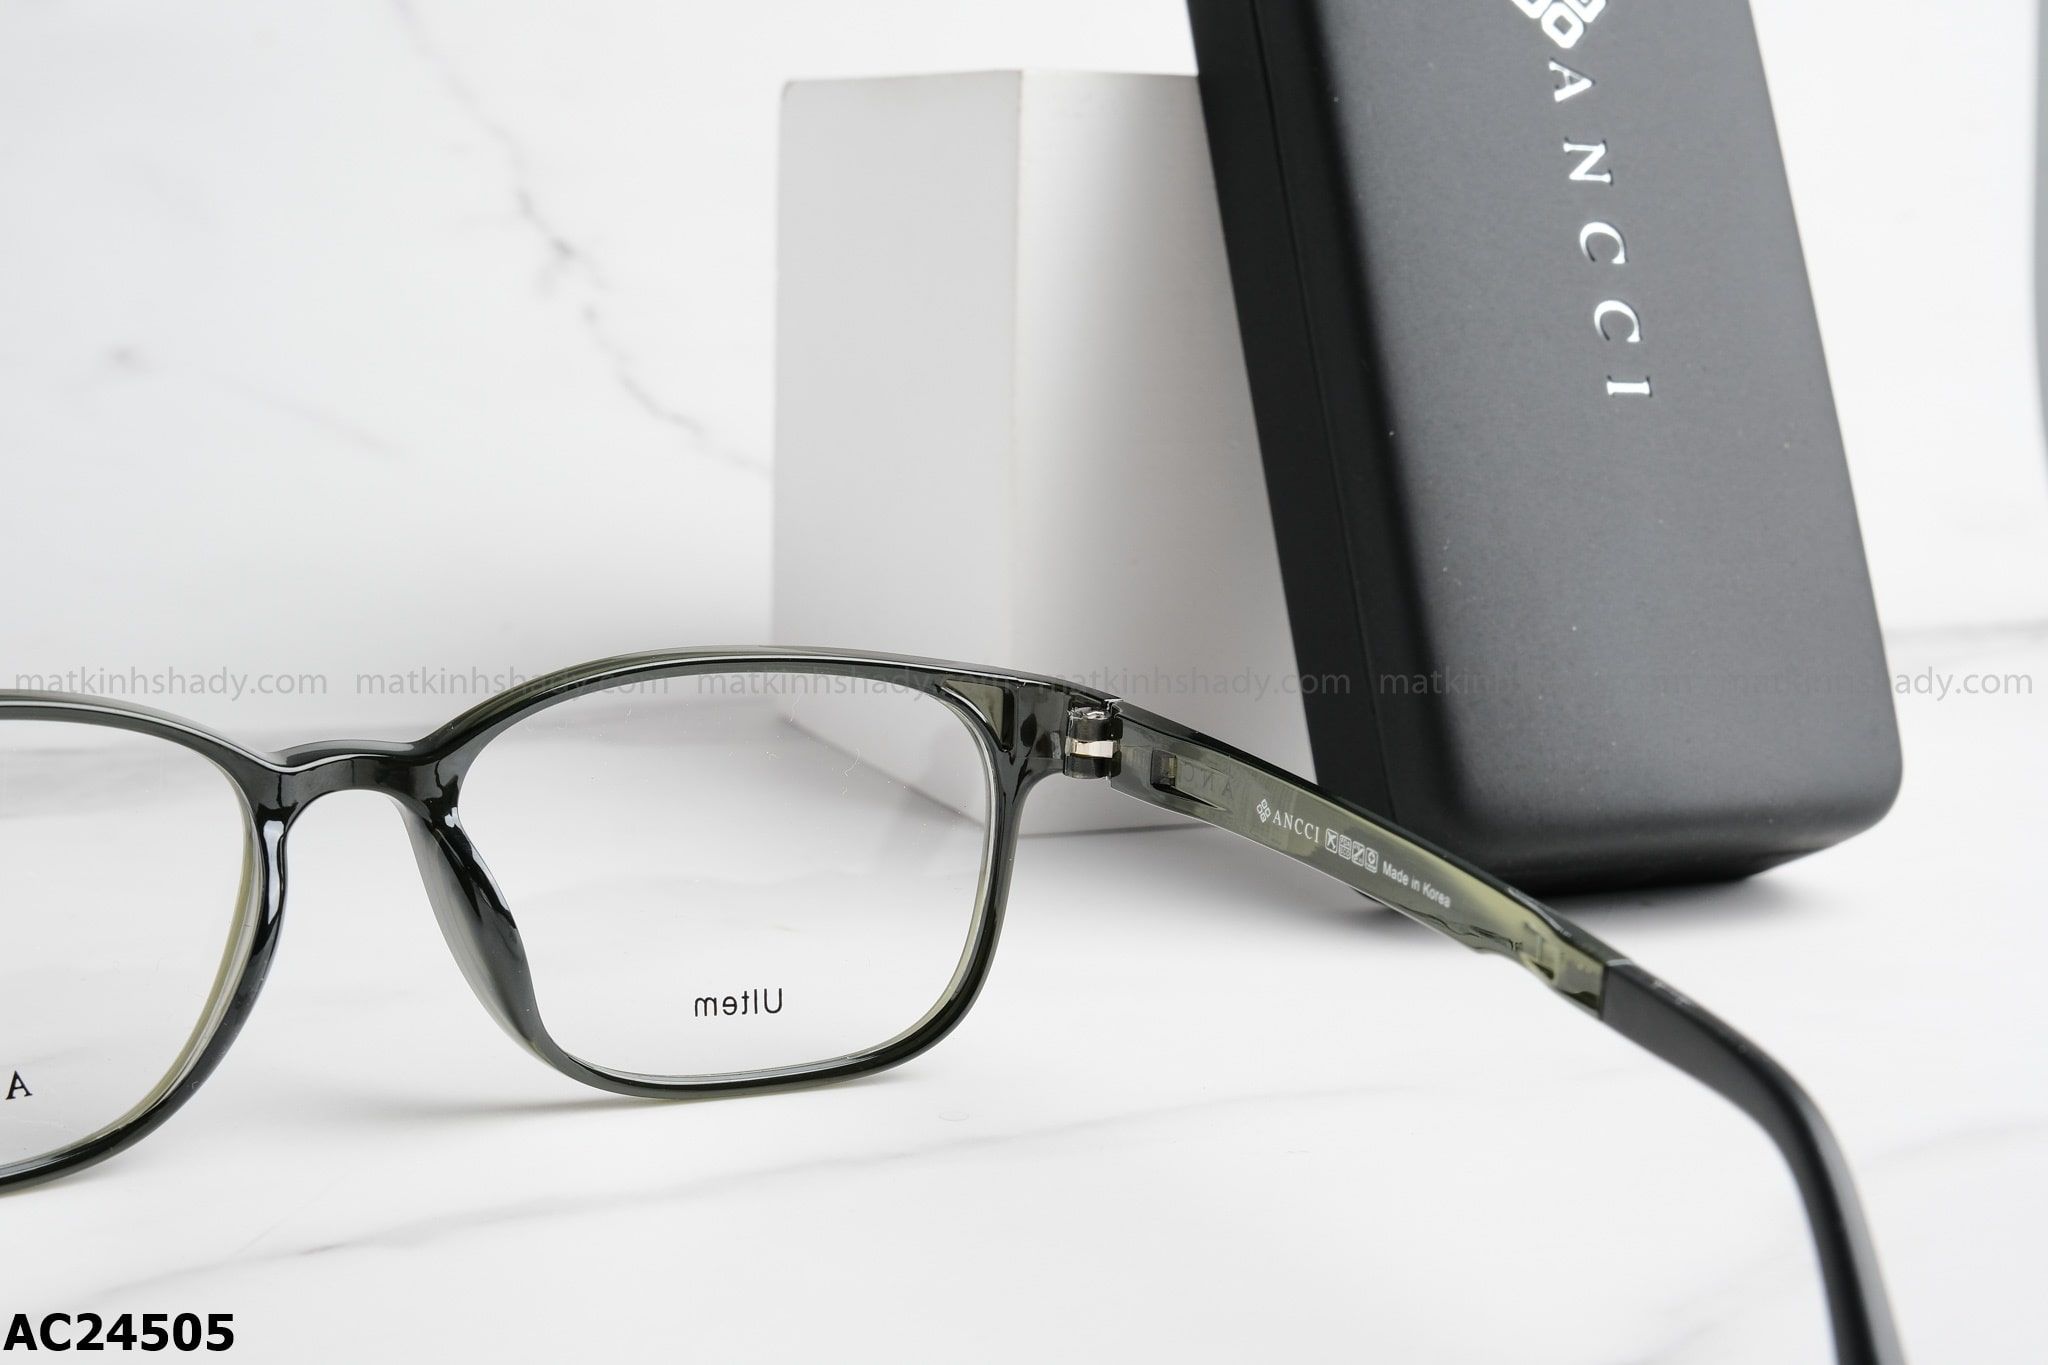  ANCCI Eyewear - Glasses - AC24505 